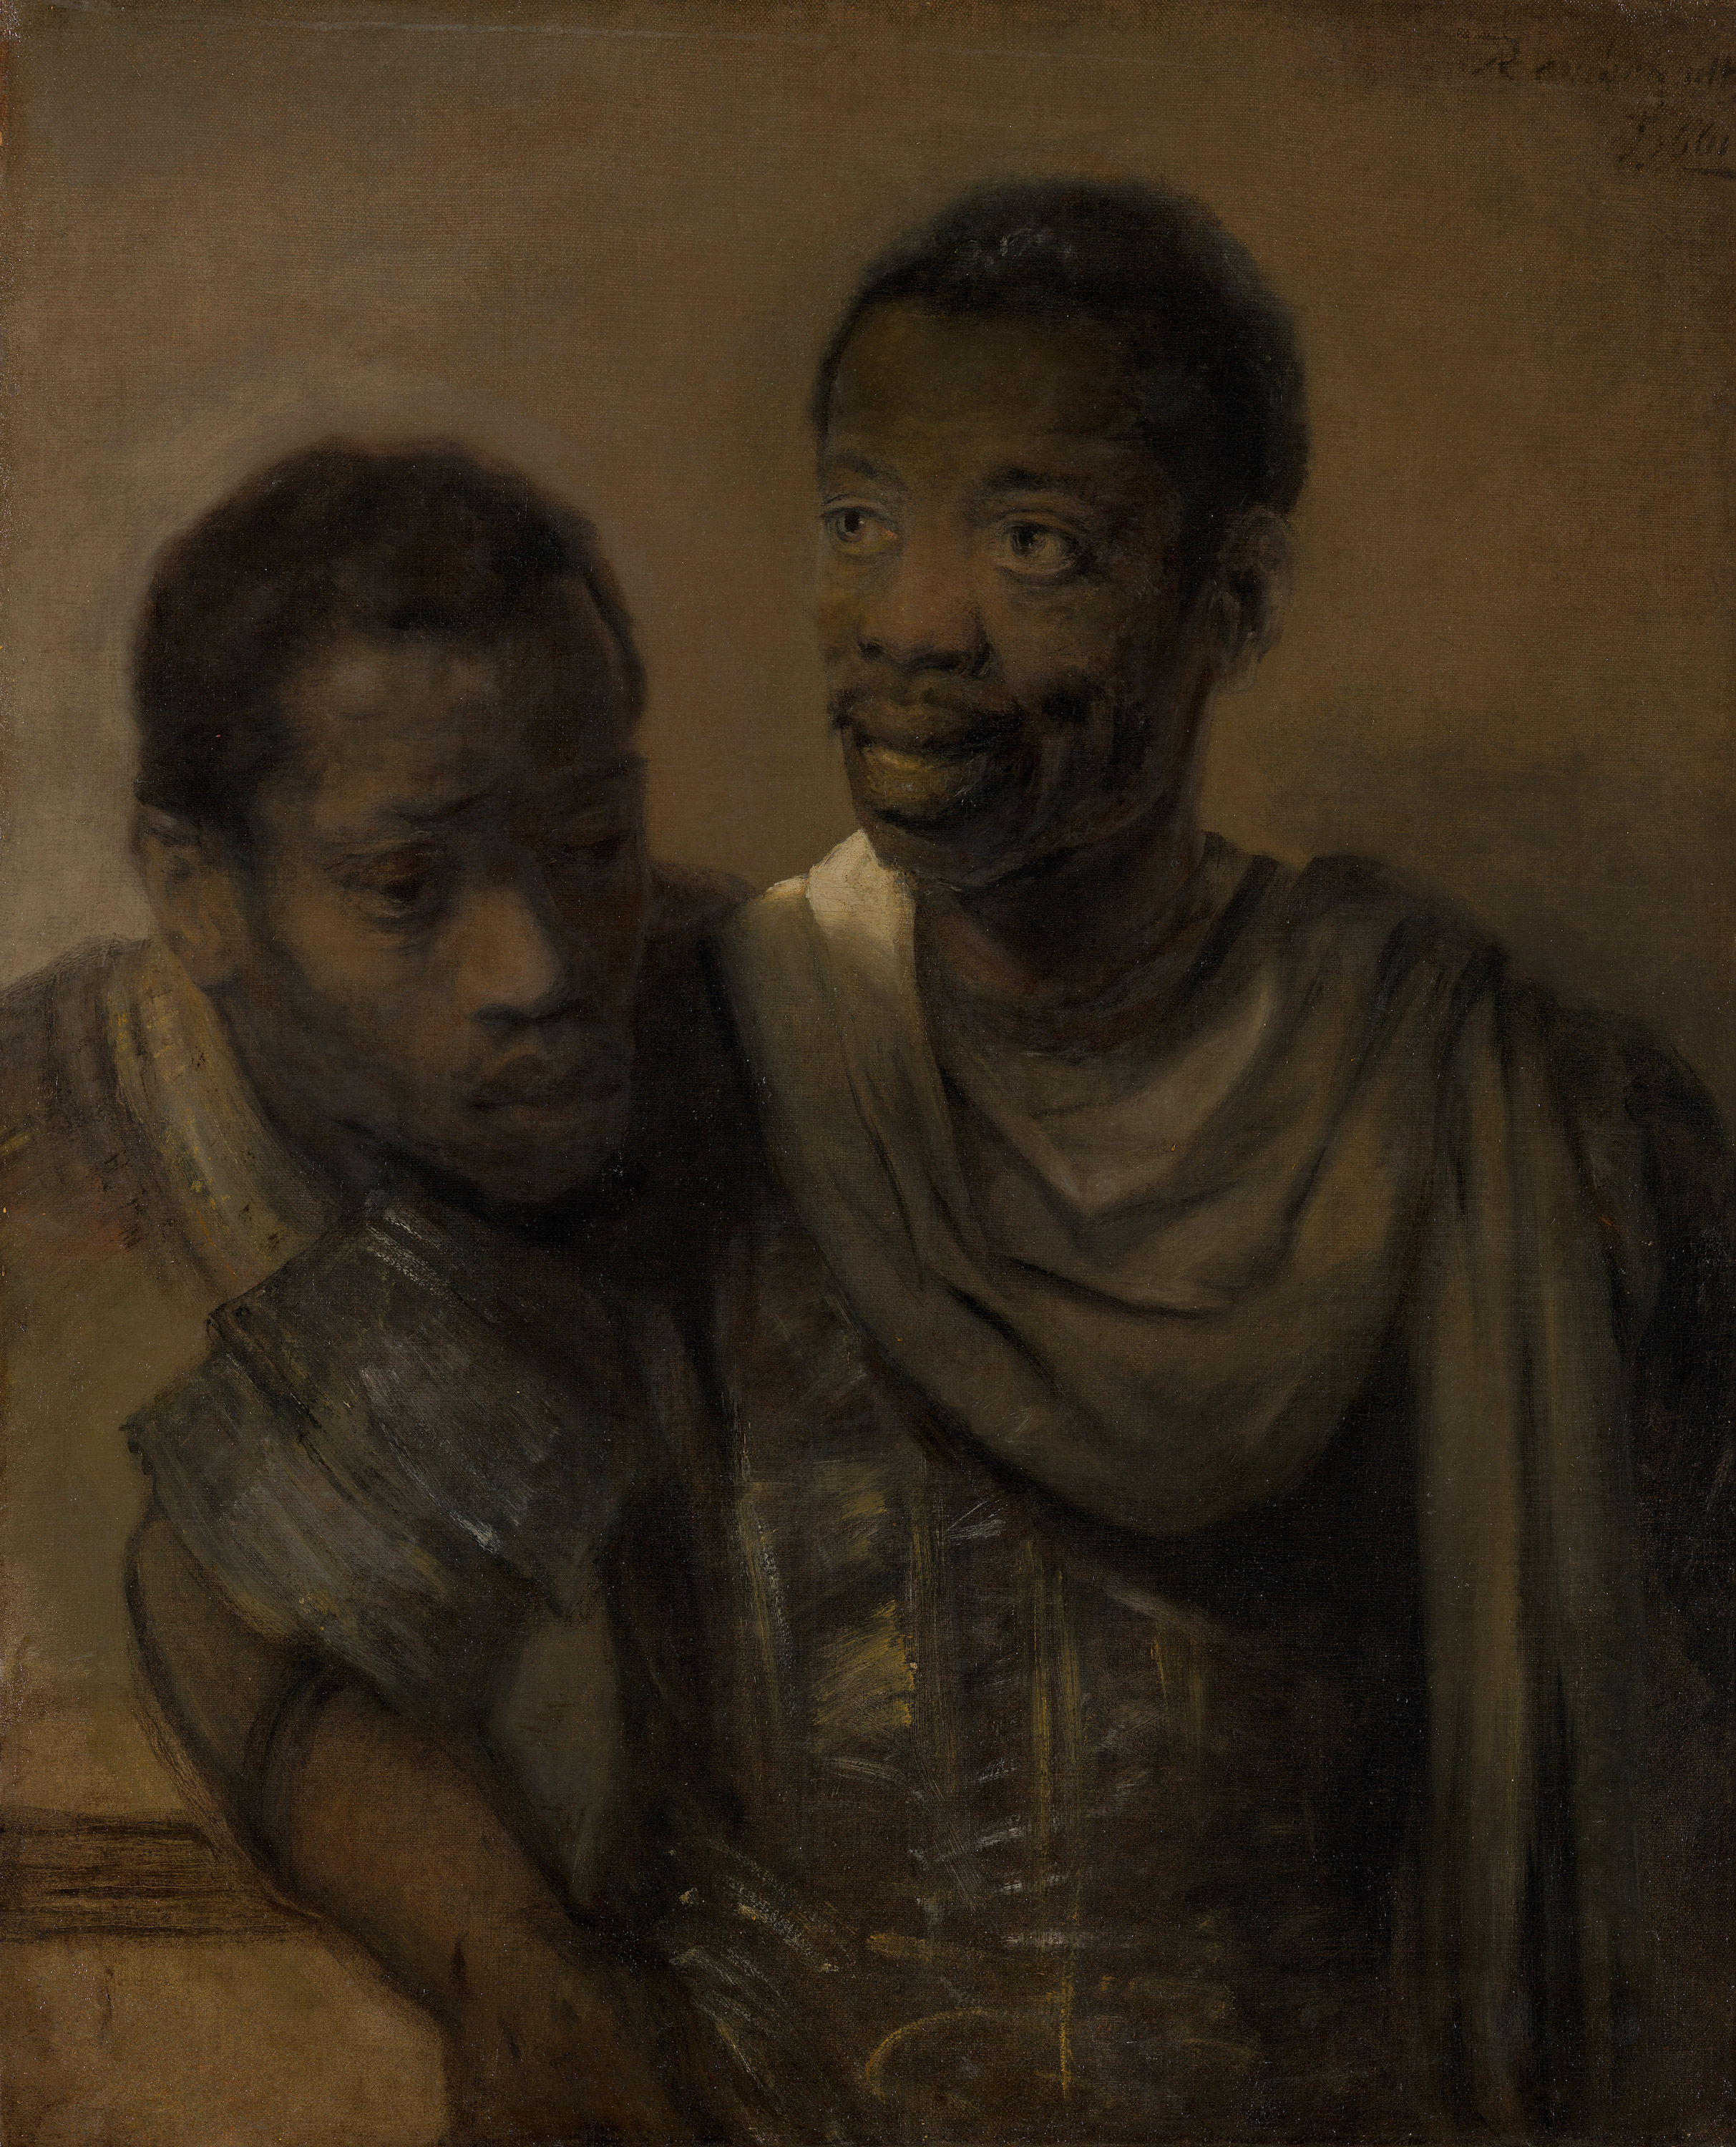 Two African Men by Rembrandt van Rijn - 1661 - 77.8 x 64.4 cm Mauritshuis, The Hague